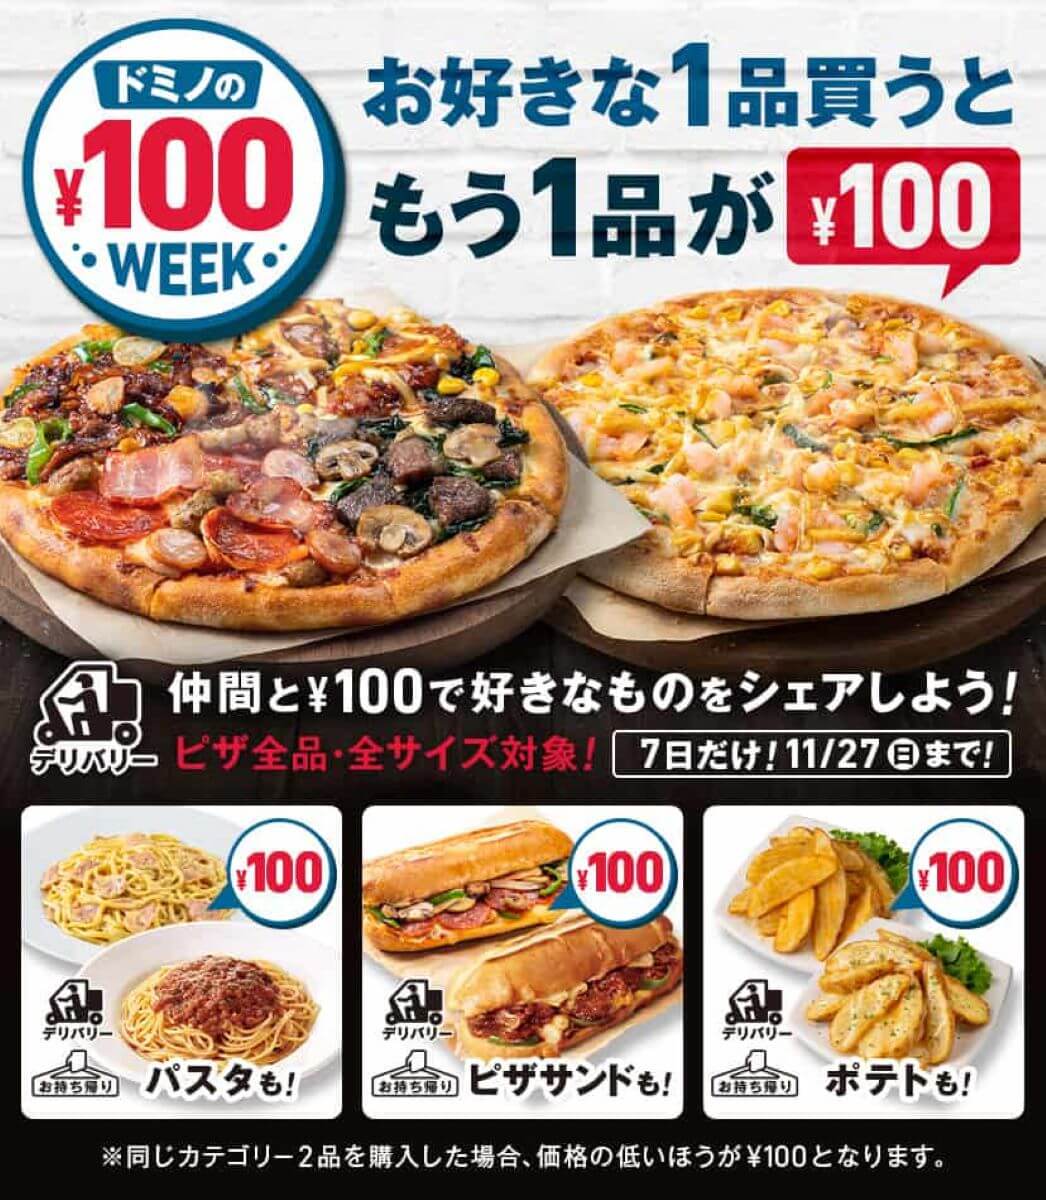 ドミノピザ-100円クーポン-アイキャッチ